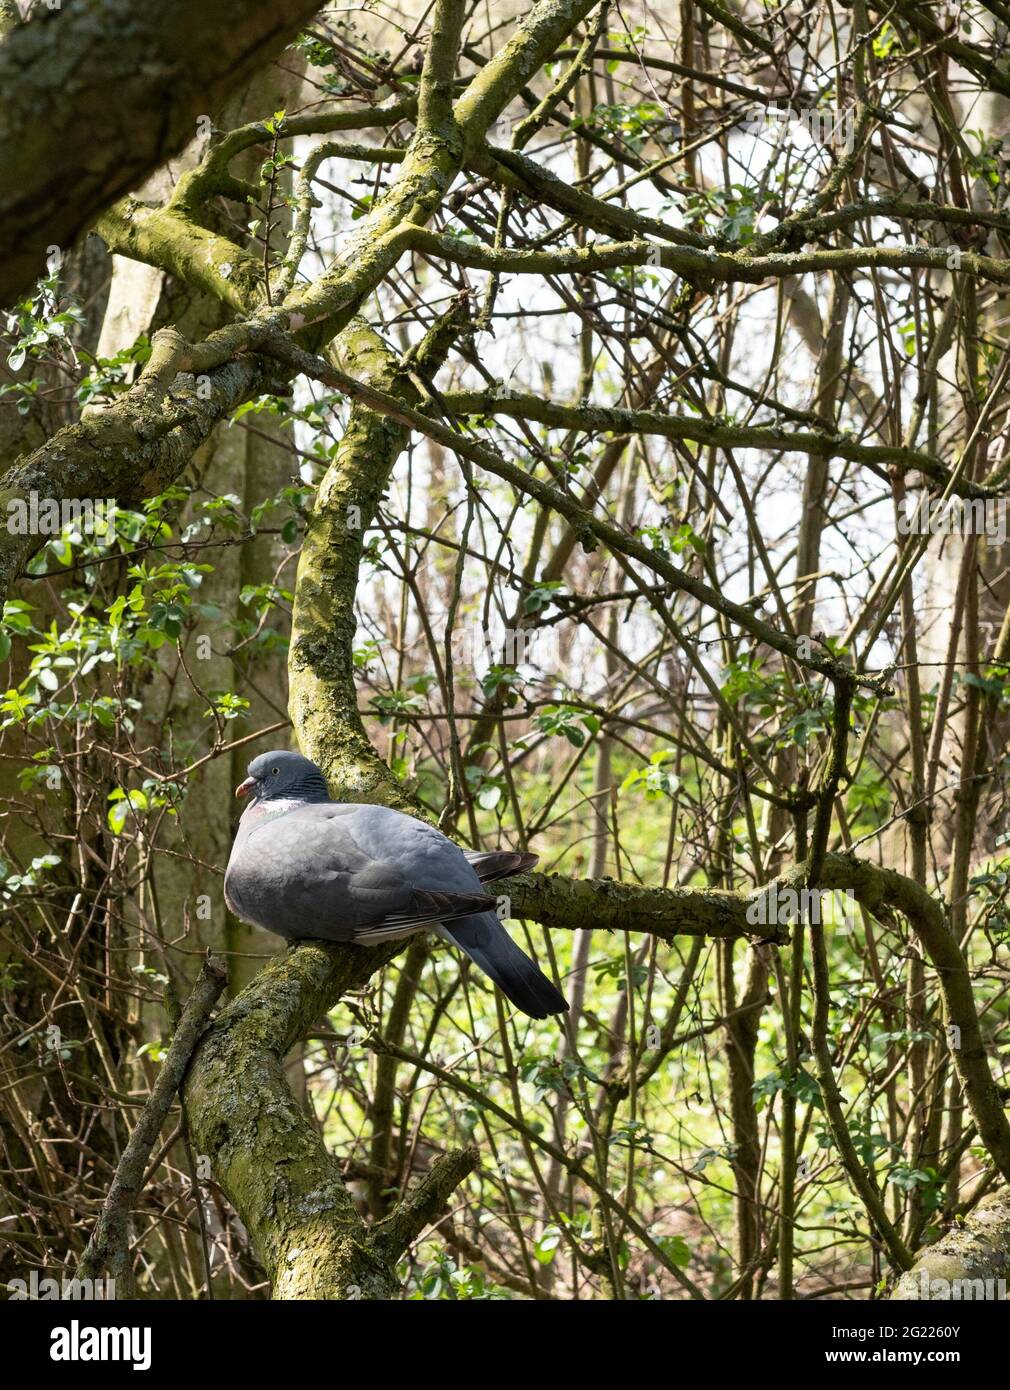 Pigeon di legno comune, Columba Palumbus, seduto su un ramo di albero nel bosco del Regno Unito. Foto Stock